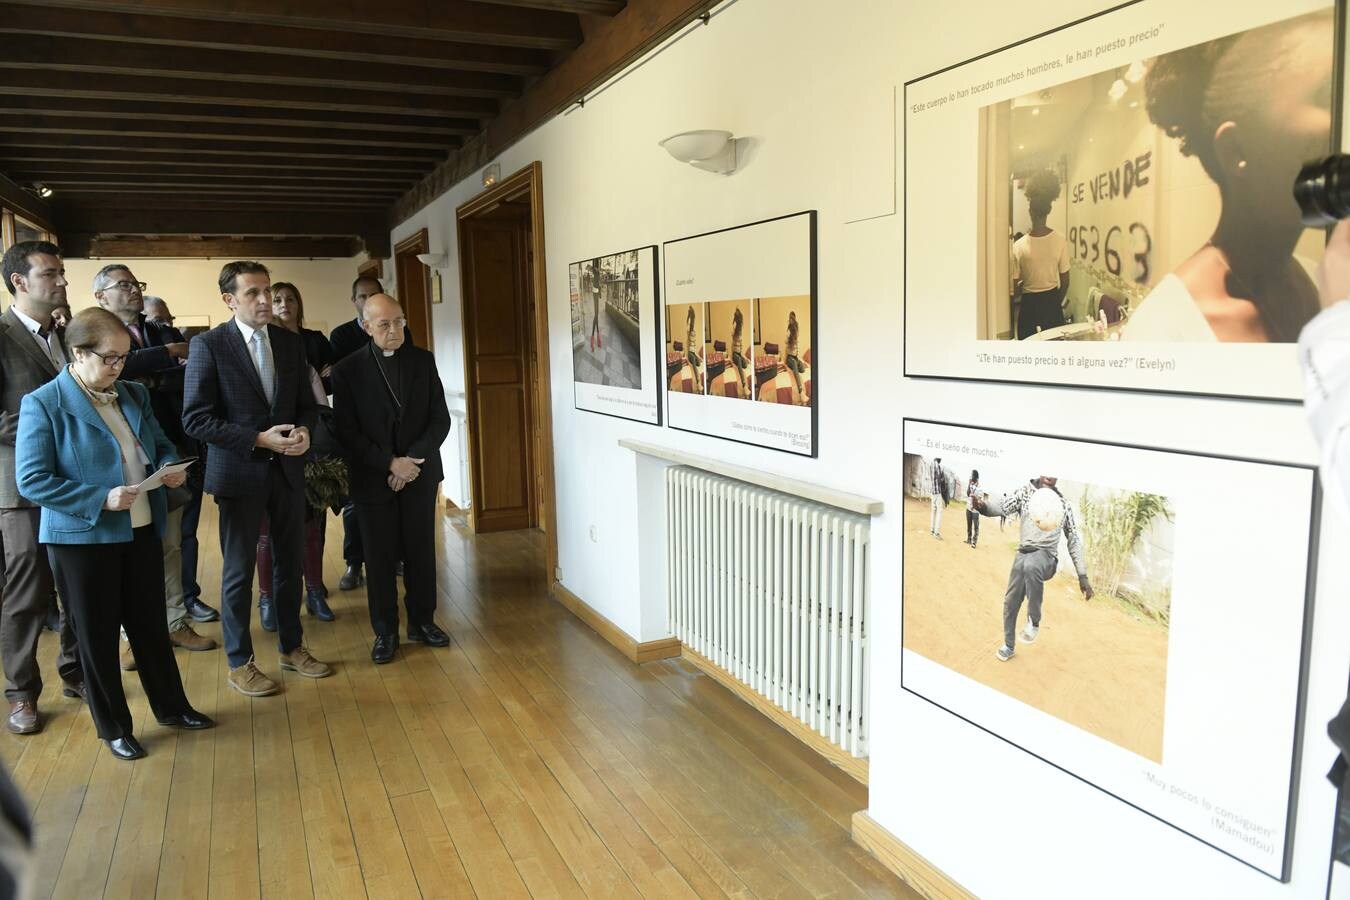 El presidente de la Diputación, Conrado Íscar, y el arzobispo de Valladolid, Ricardo Blázquez, presentan la exposición 'Punto y seguimos. La vida puede más' instalada en el Palacio Pimentel de Valladolid.